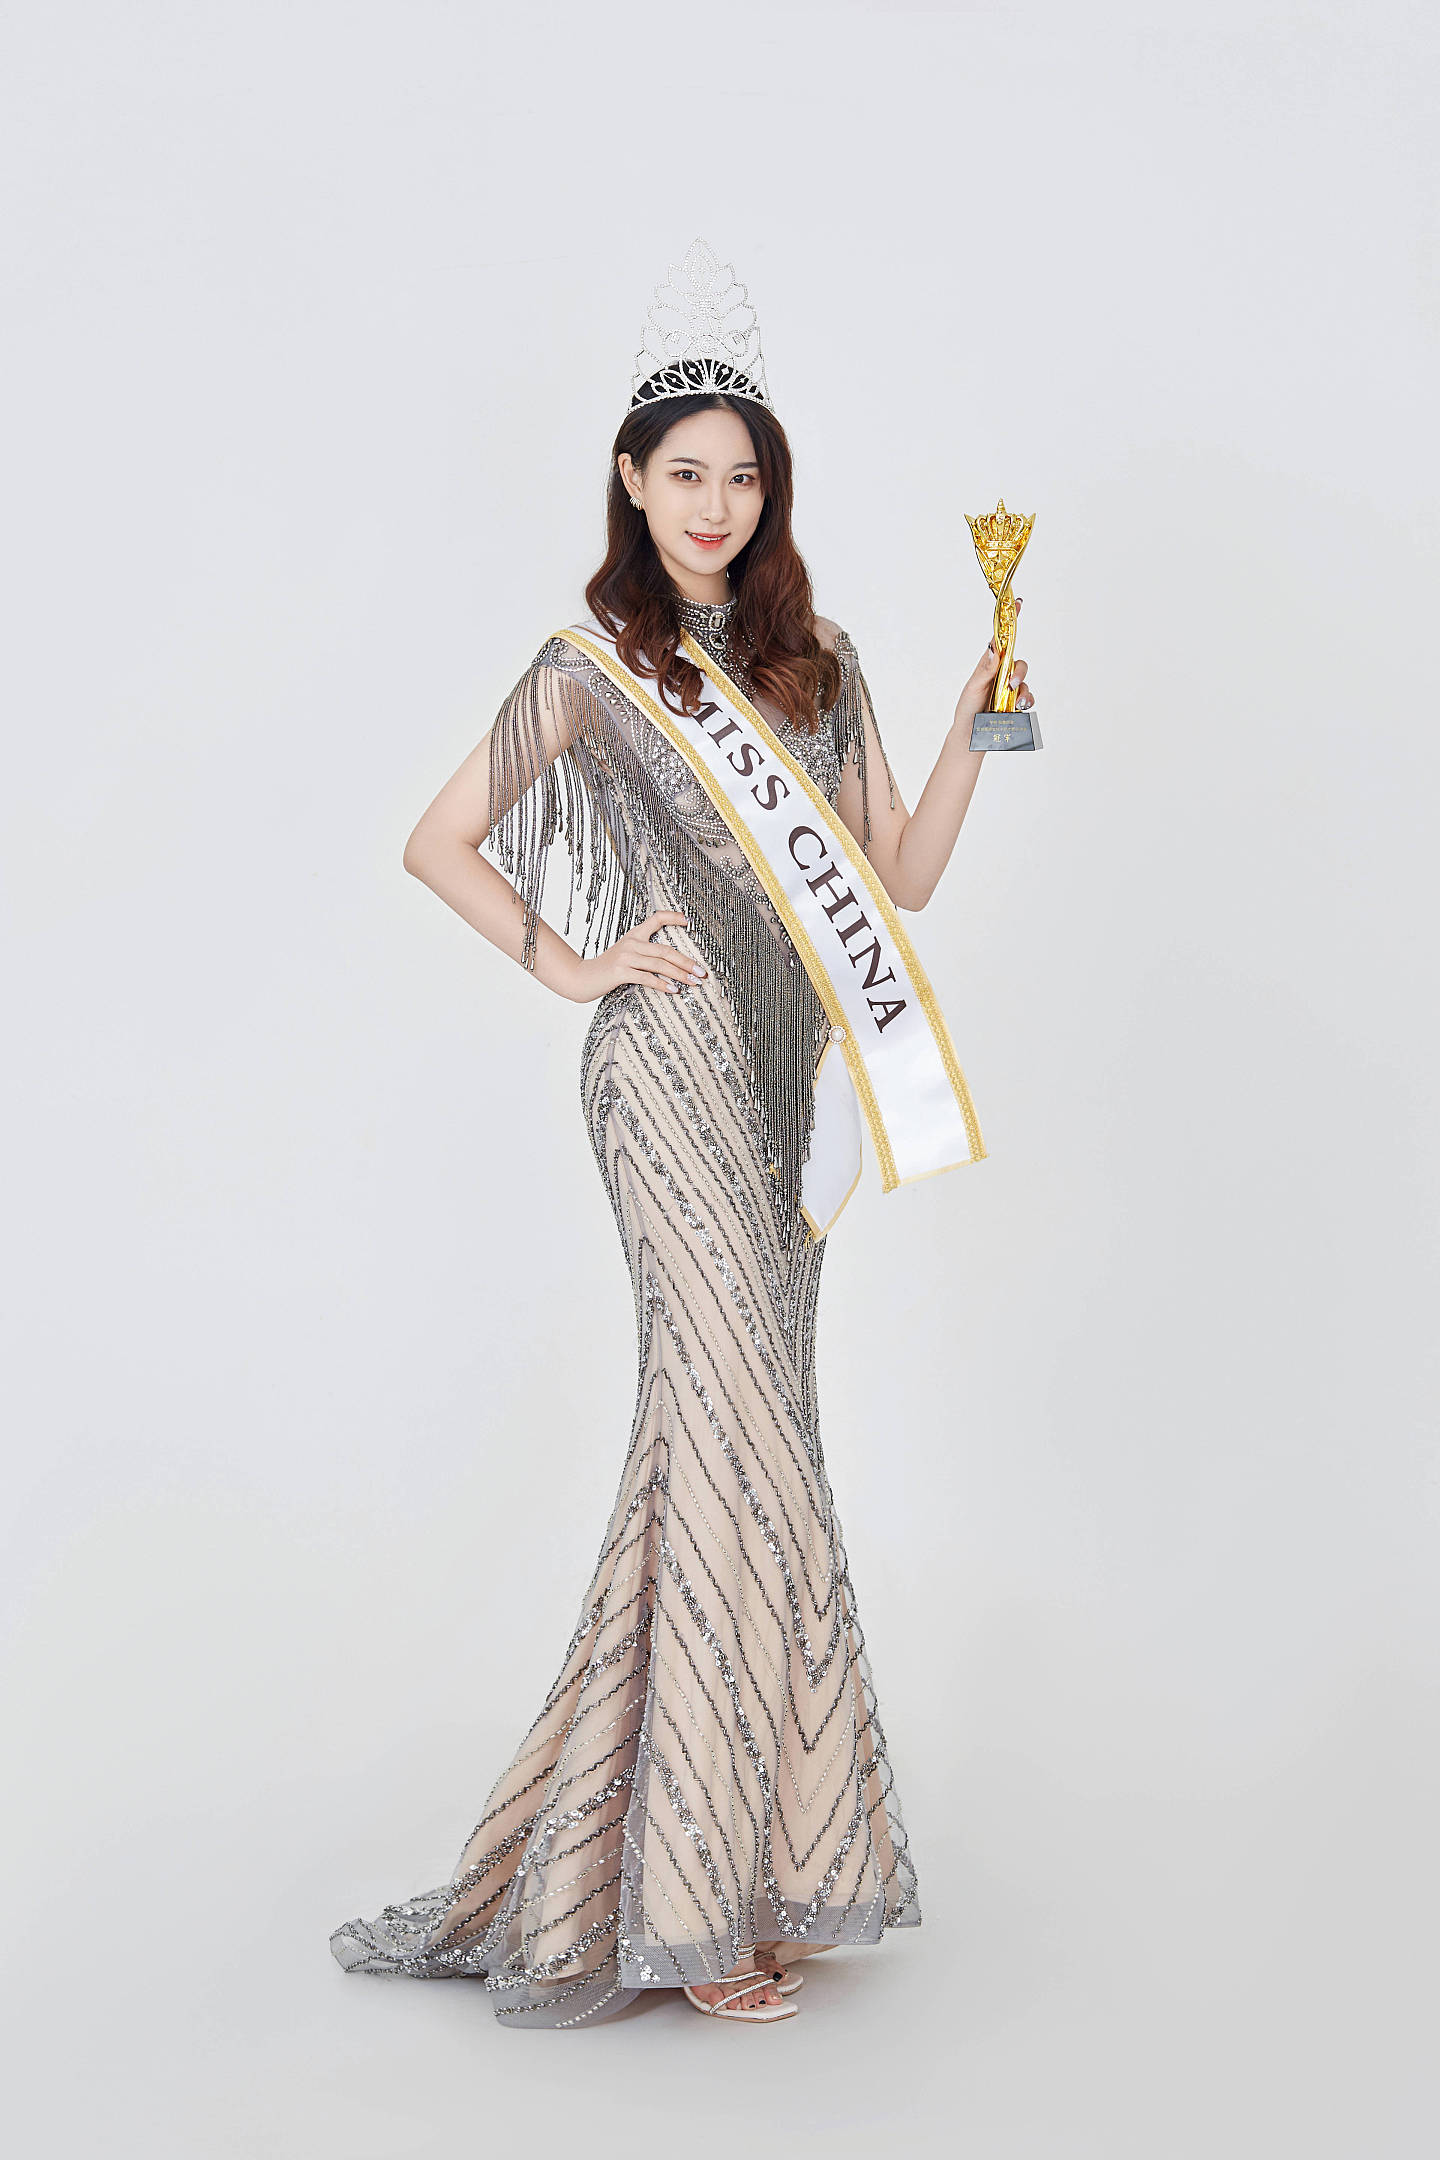 华昕·肽雅丽菲总冠名2021全球旅游文化小姐中国大赛总决赛上演美丽盛宴 - 1